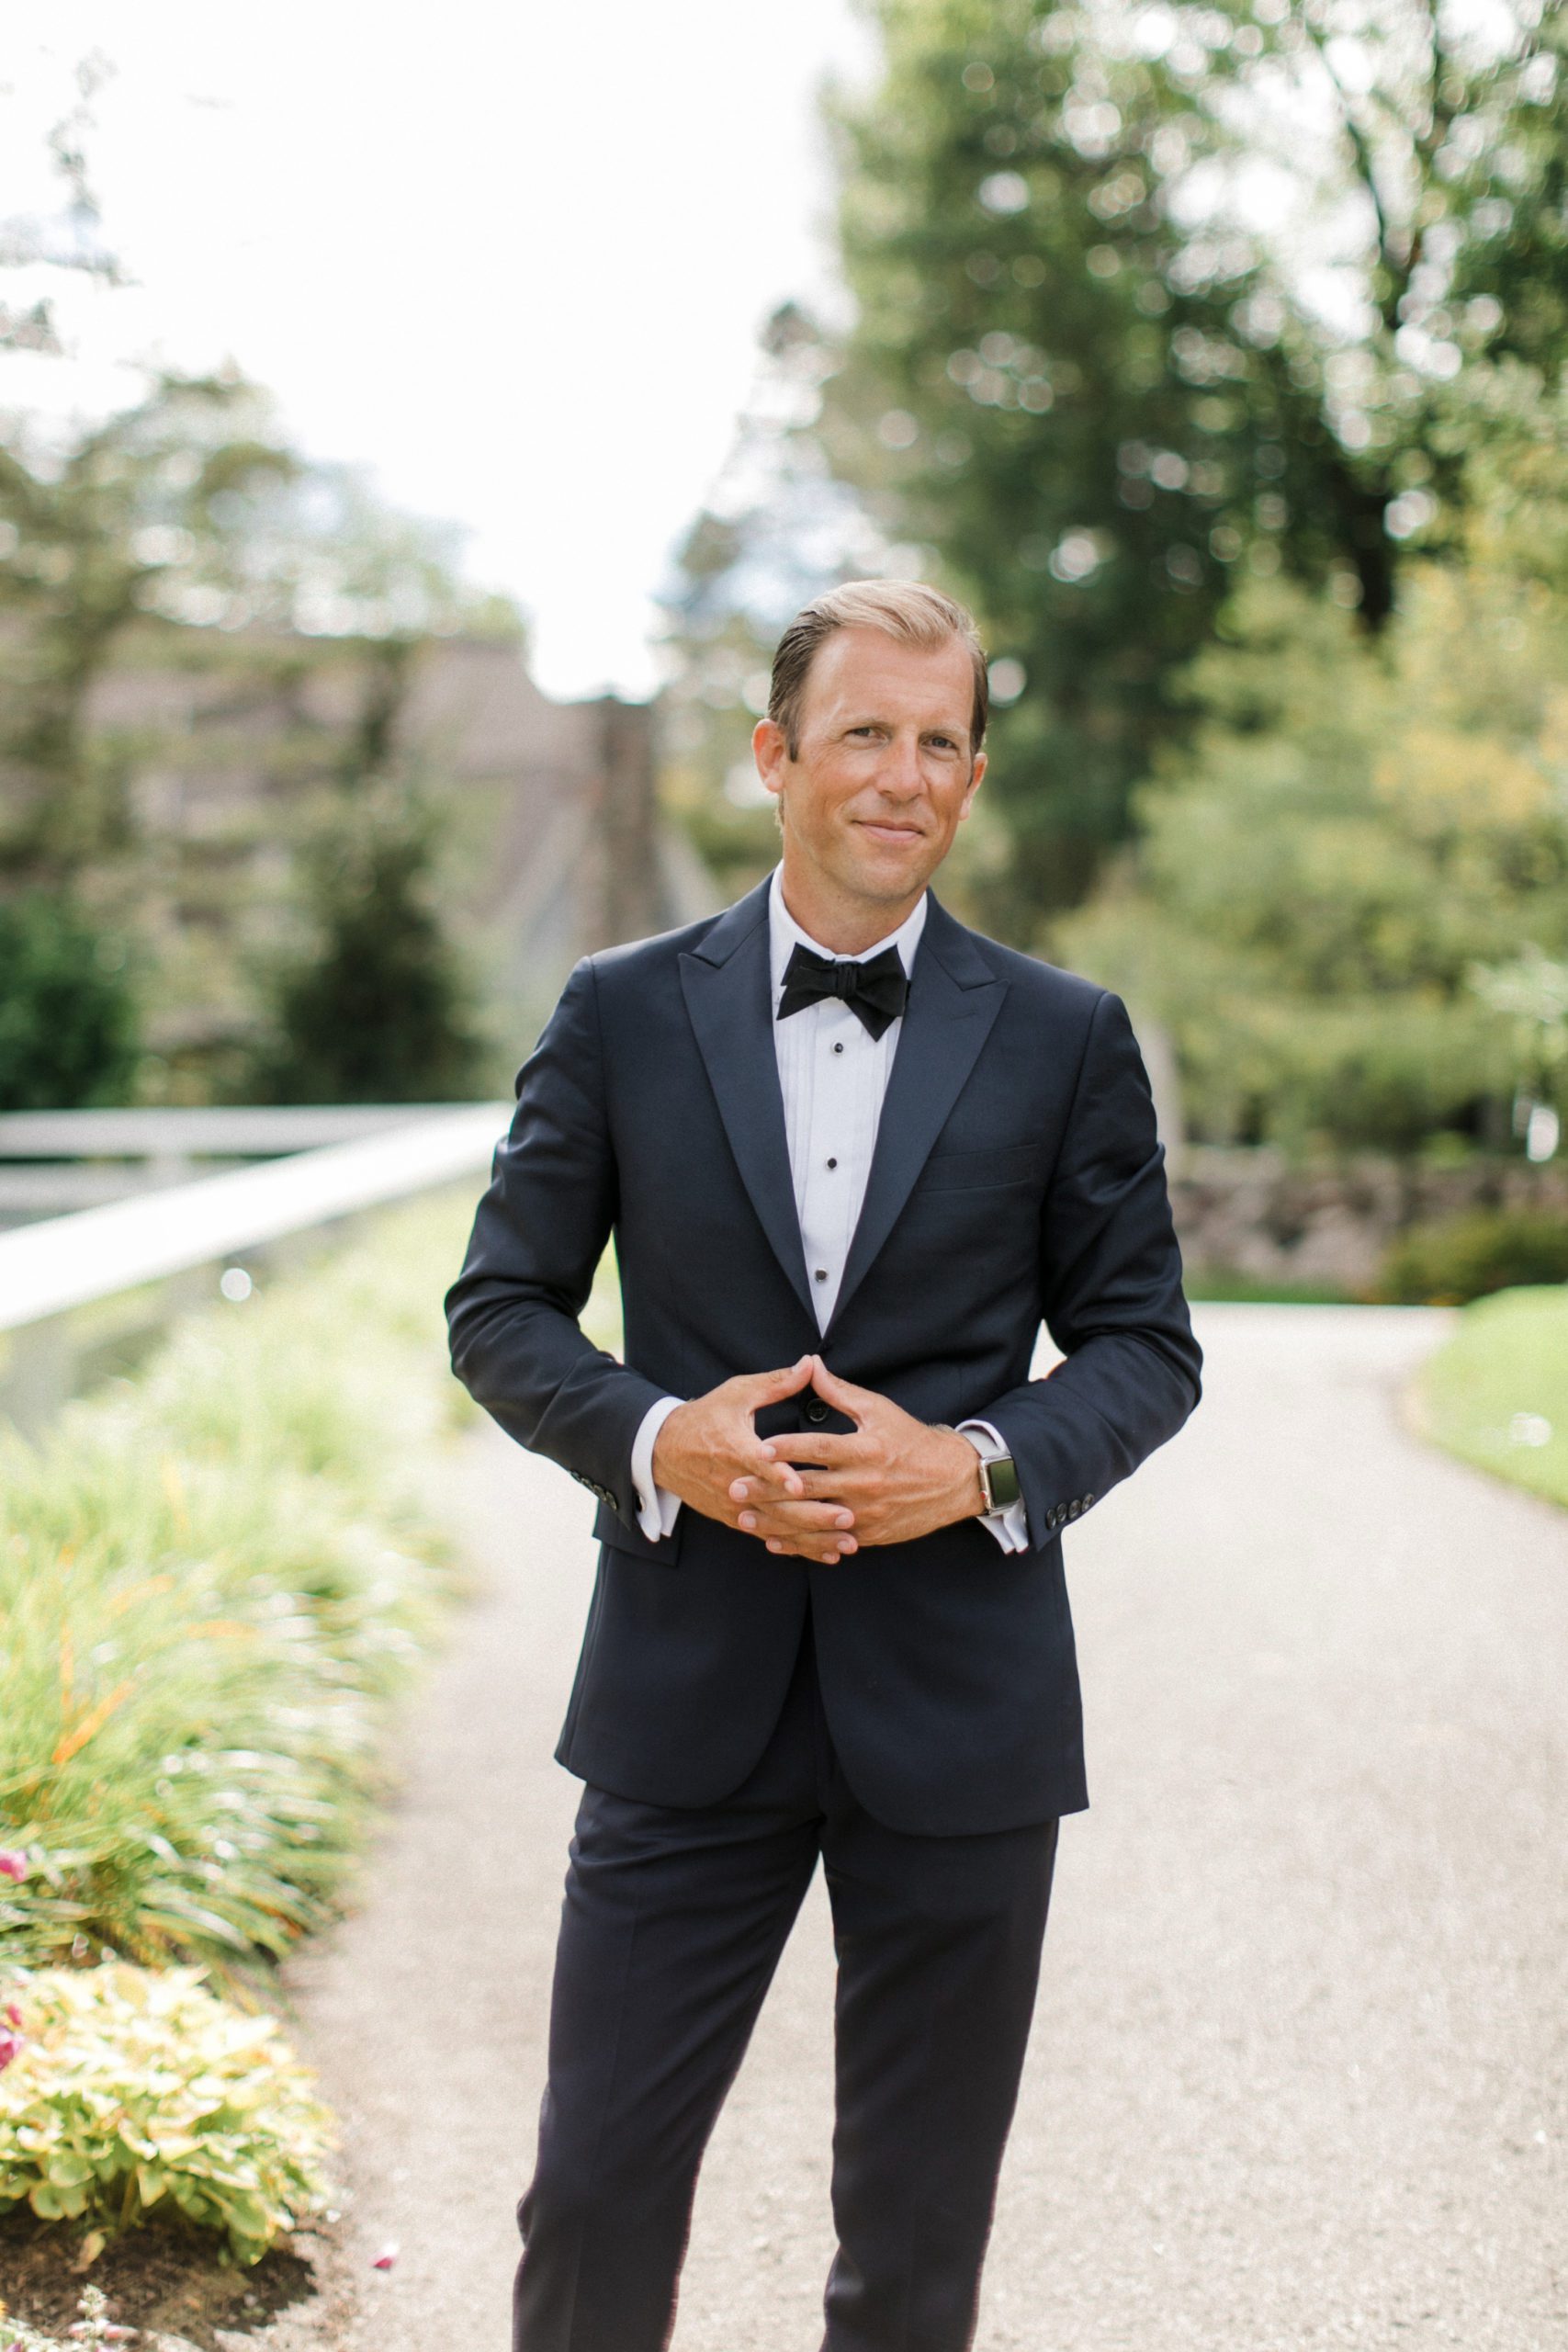 Traverse City Wedding Photographer Cory Weber in a tuxedo